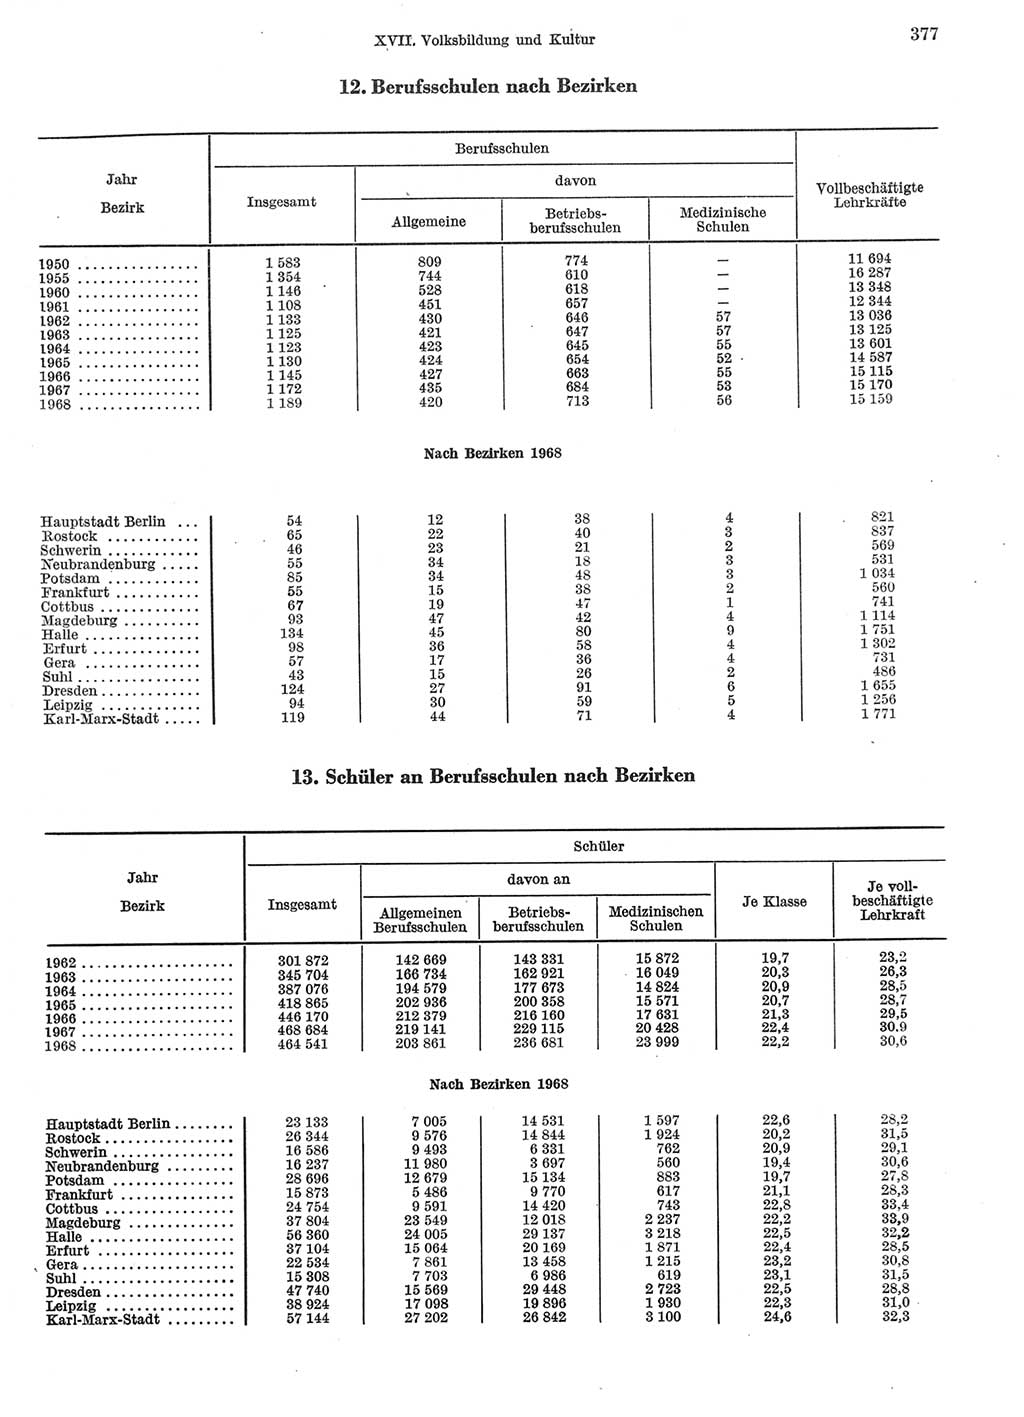 Statistisches Jahrbuch der Deutschen Demokratischen Republik (DDR) 1969, Seite 377 (Stat. Jb. DDR 1969, S. 377)